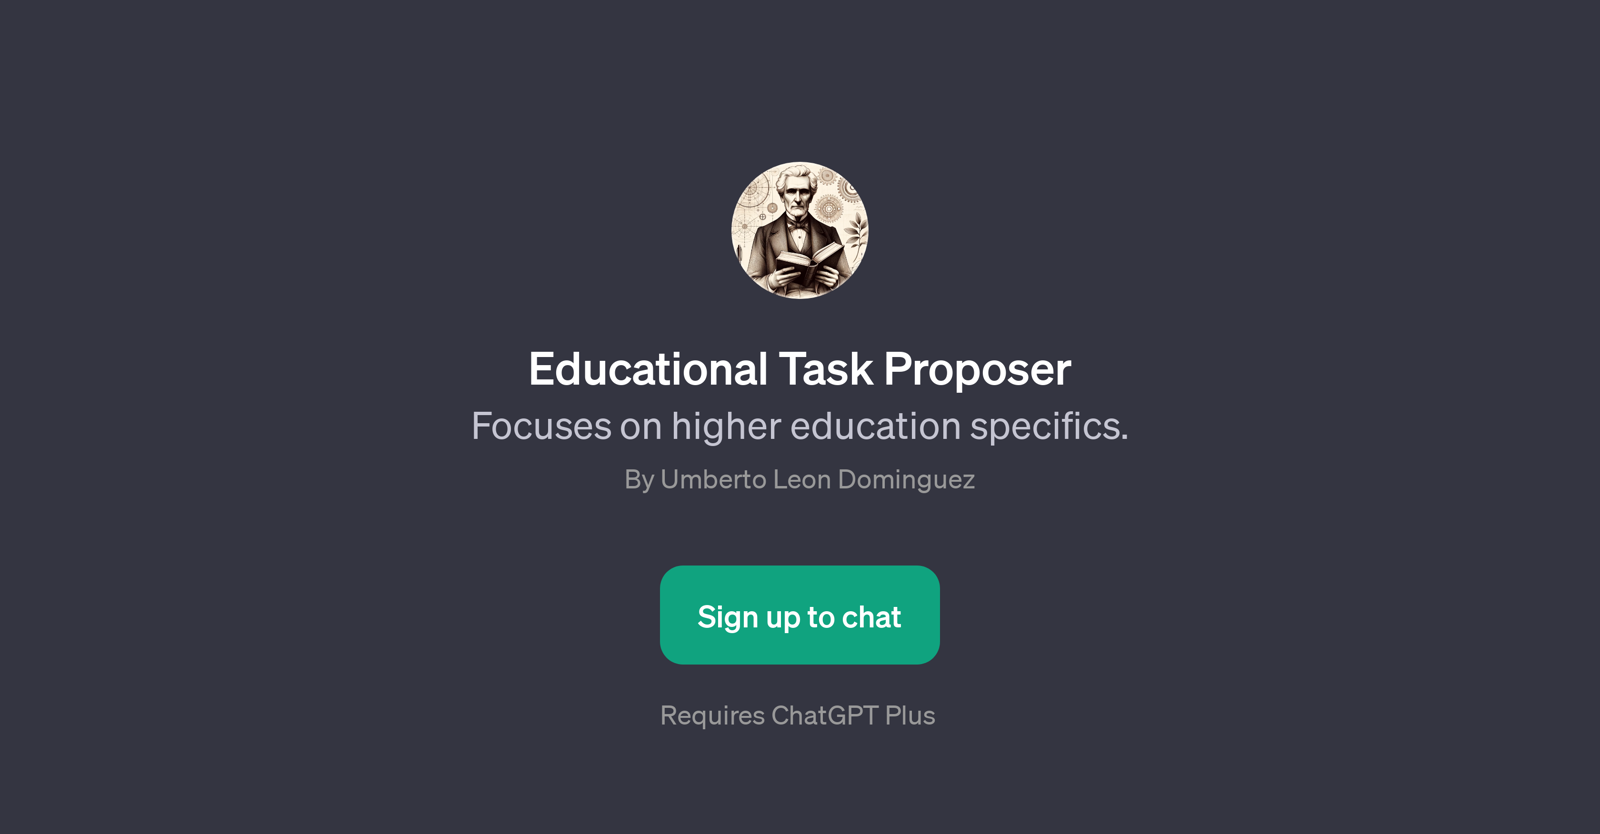 Educational Task Proposer website